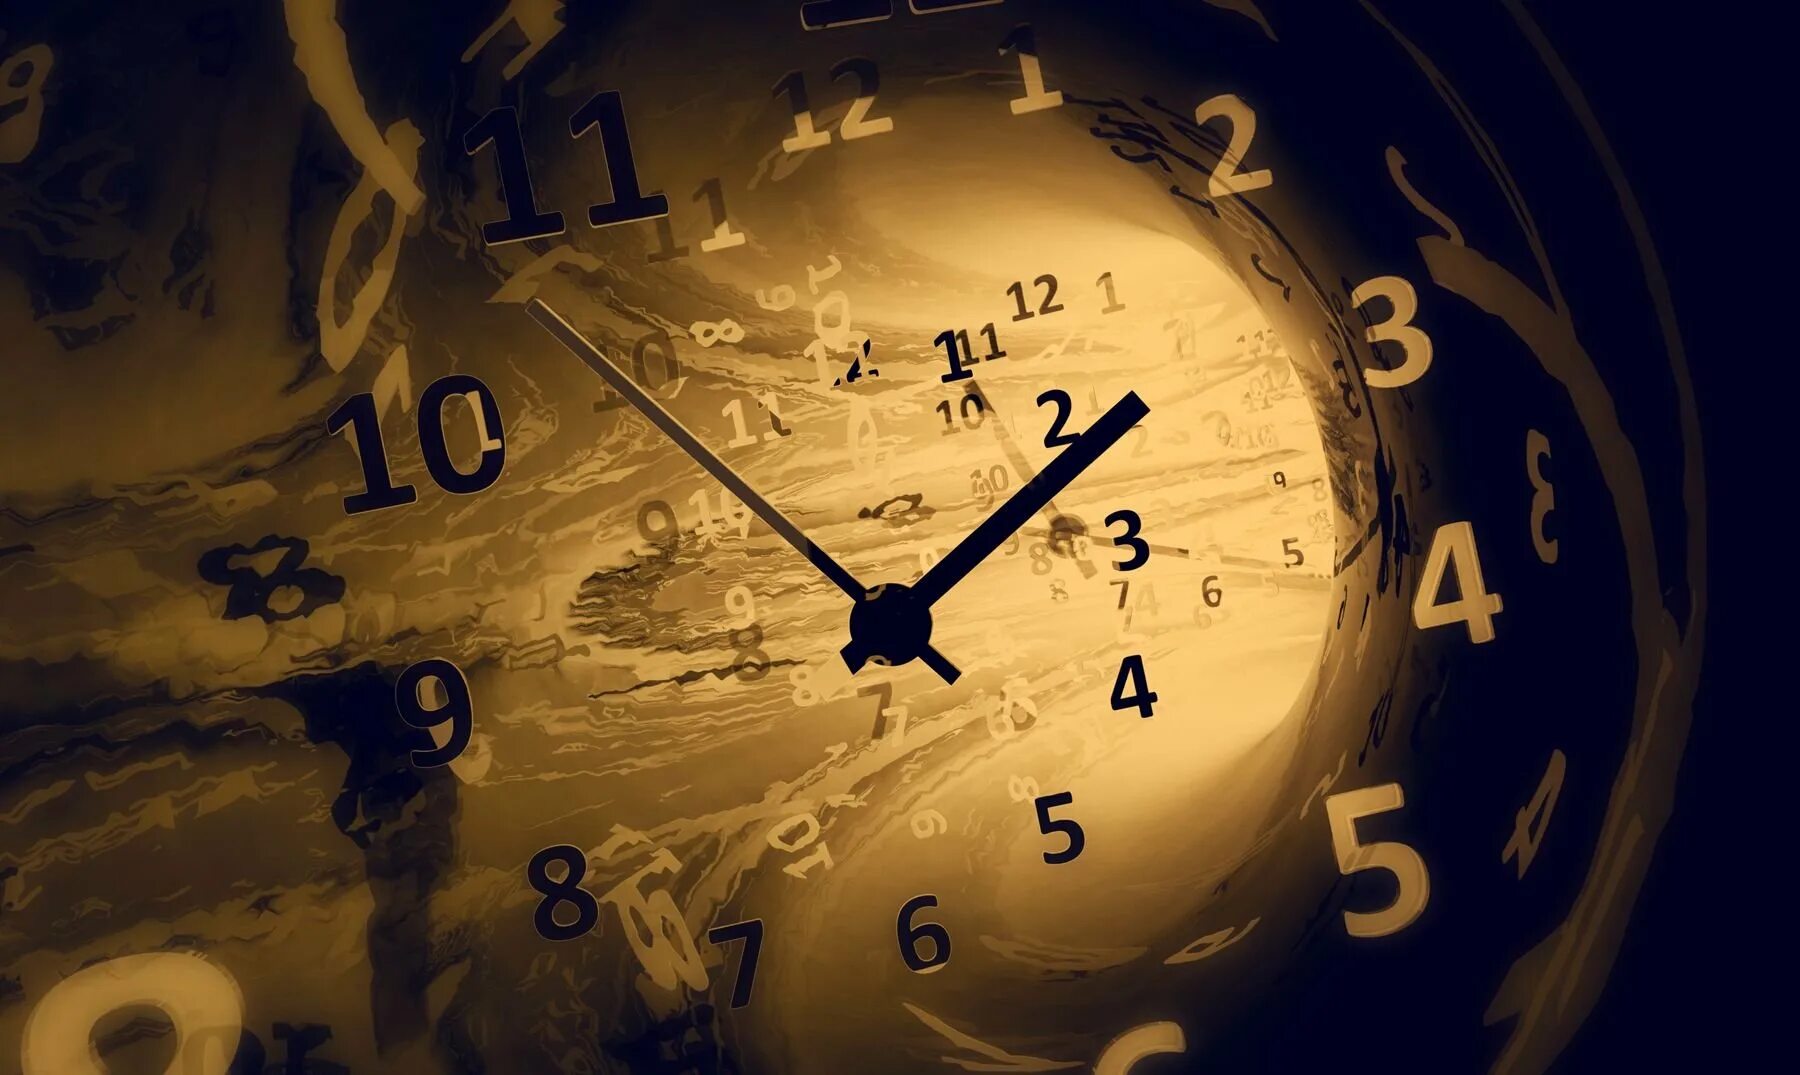 Време ое. Часы и время. Путешествие во времени. Часы в прошлое. Часы "путешествие во времени".